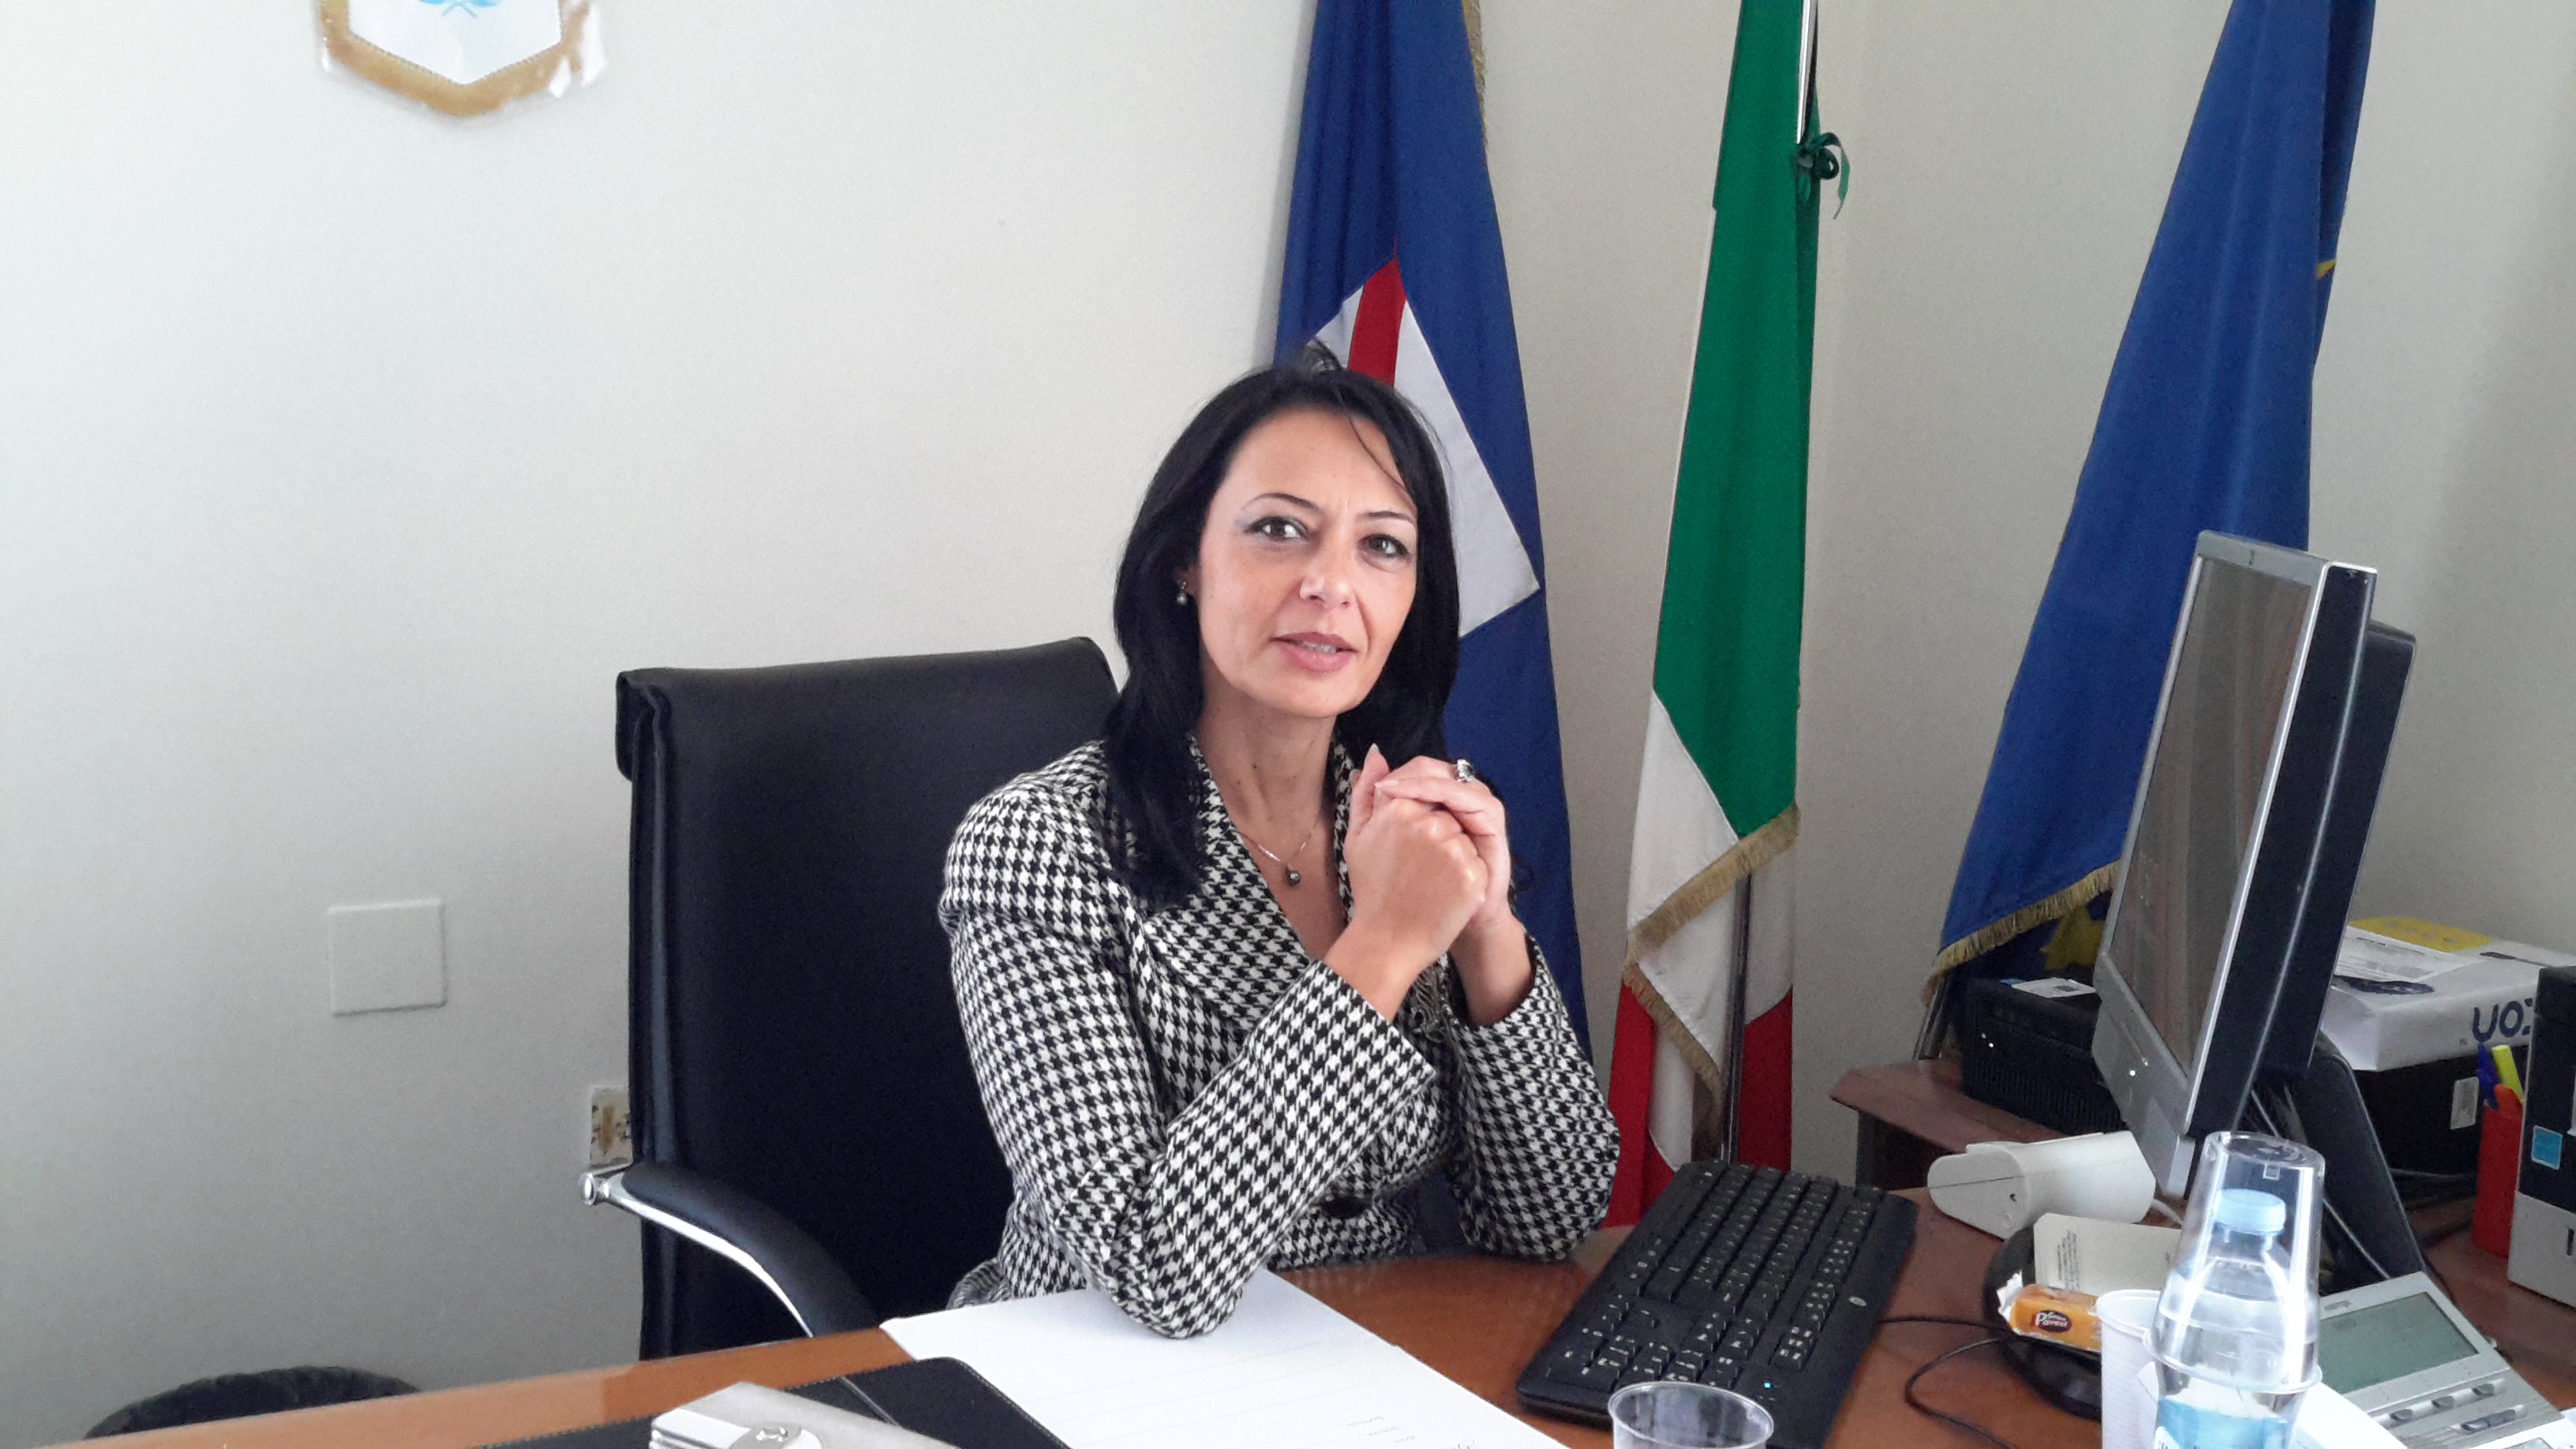  Campania, Palmeri: “Rilanciamo l ‘apprendistato per imparare un mestiere sul luogo di lavoro”